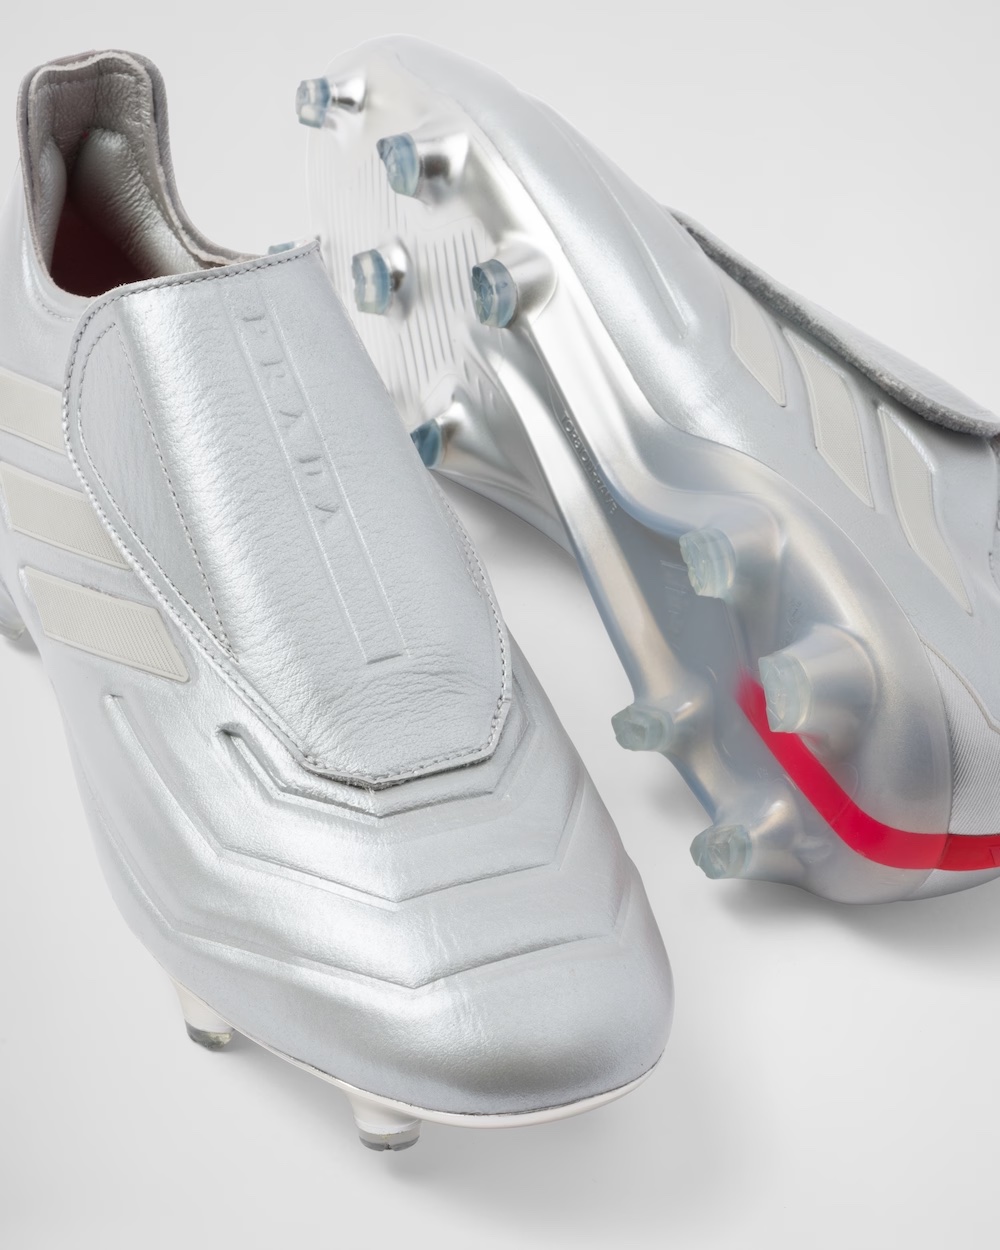 adidas x Prada introducerar fotbollsskor - Dopest